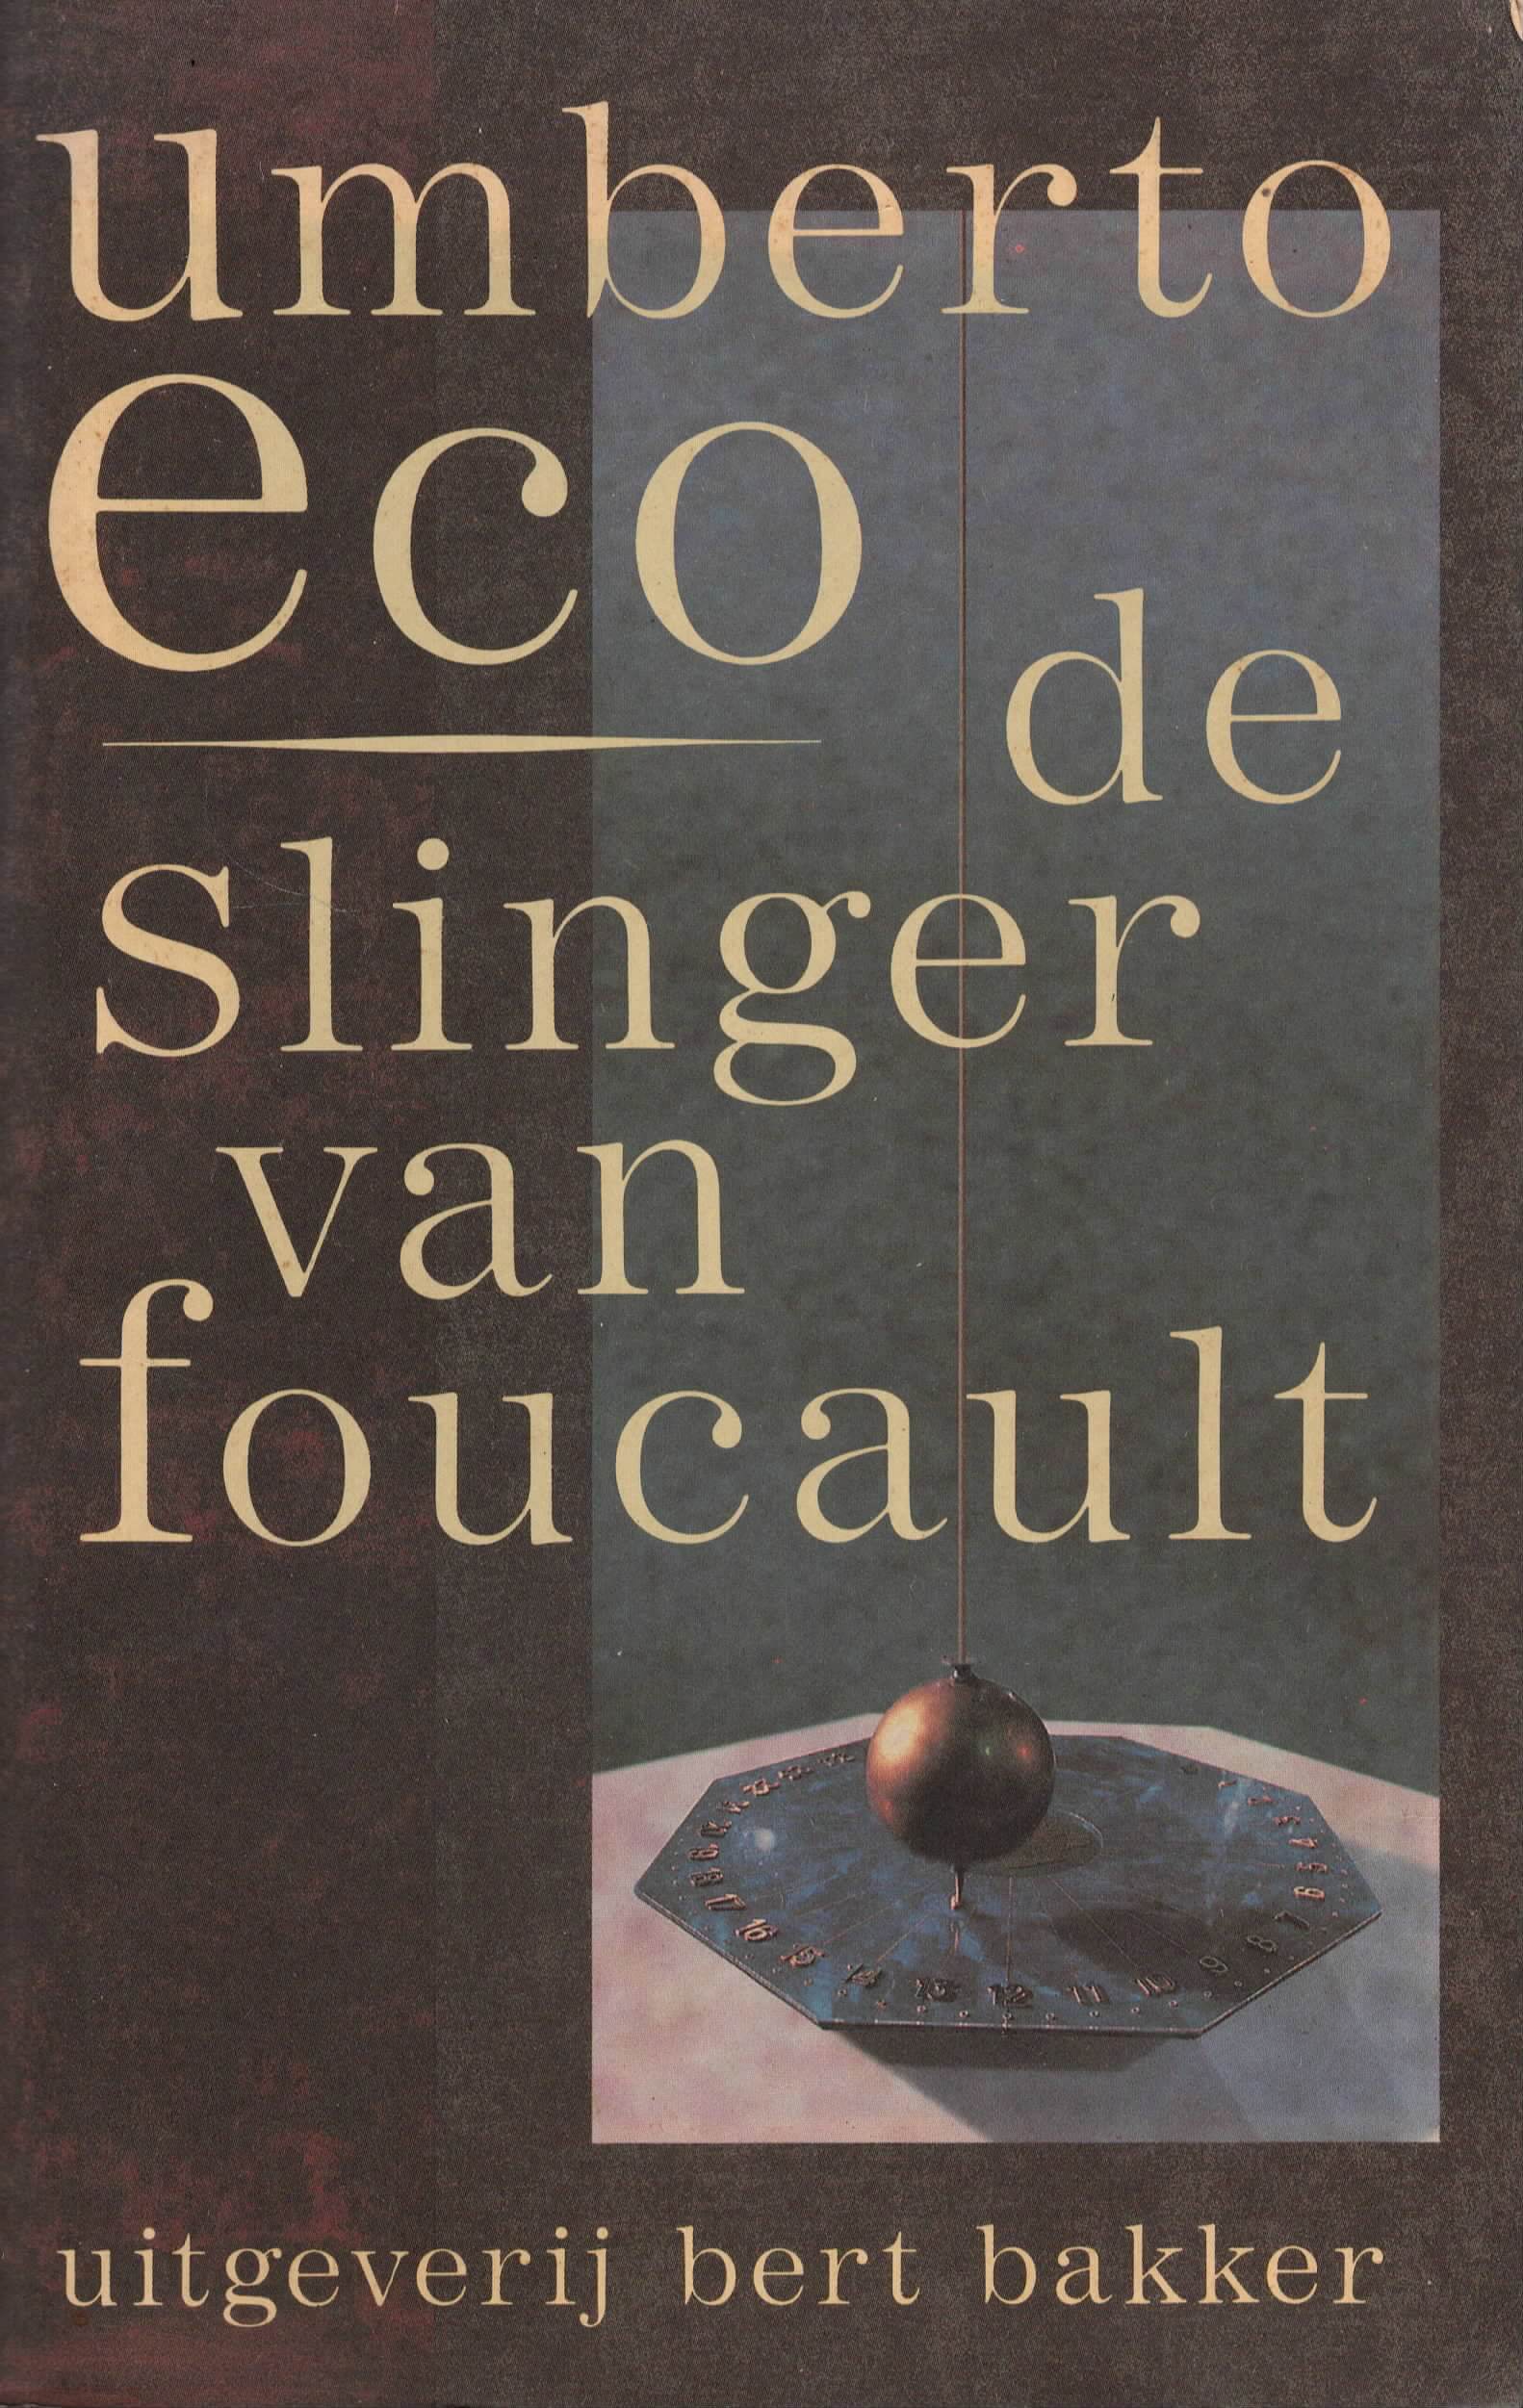 Ecologie dutje hart De slinger van foucault Umberto Eco bestellen? - Boekenvinden.nl